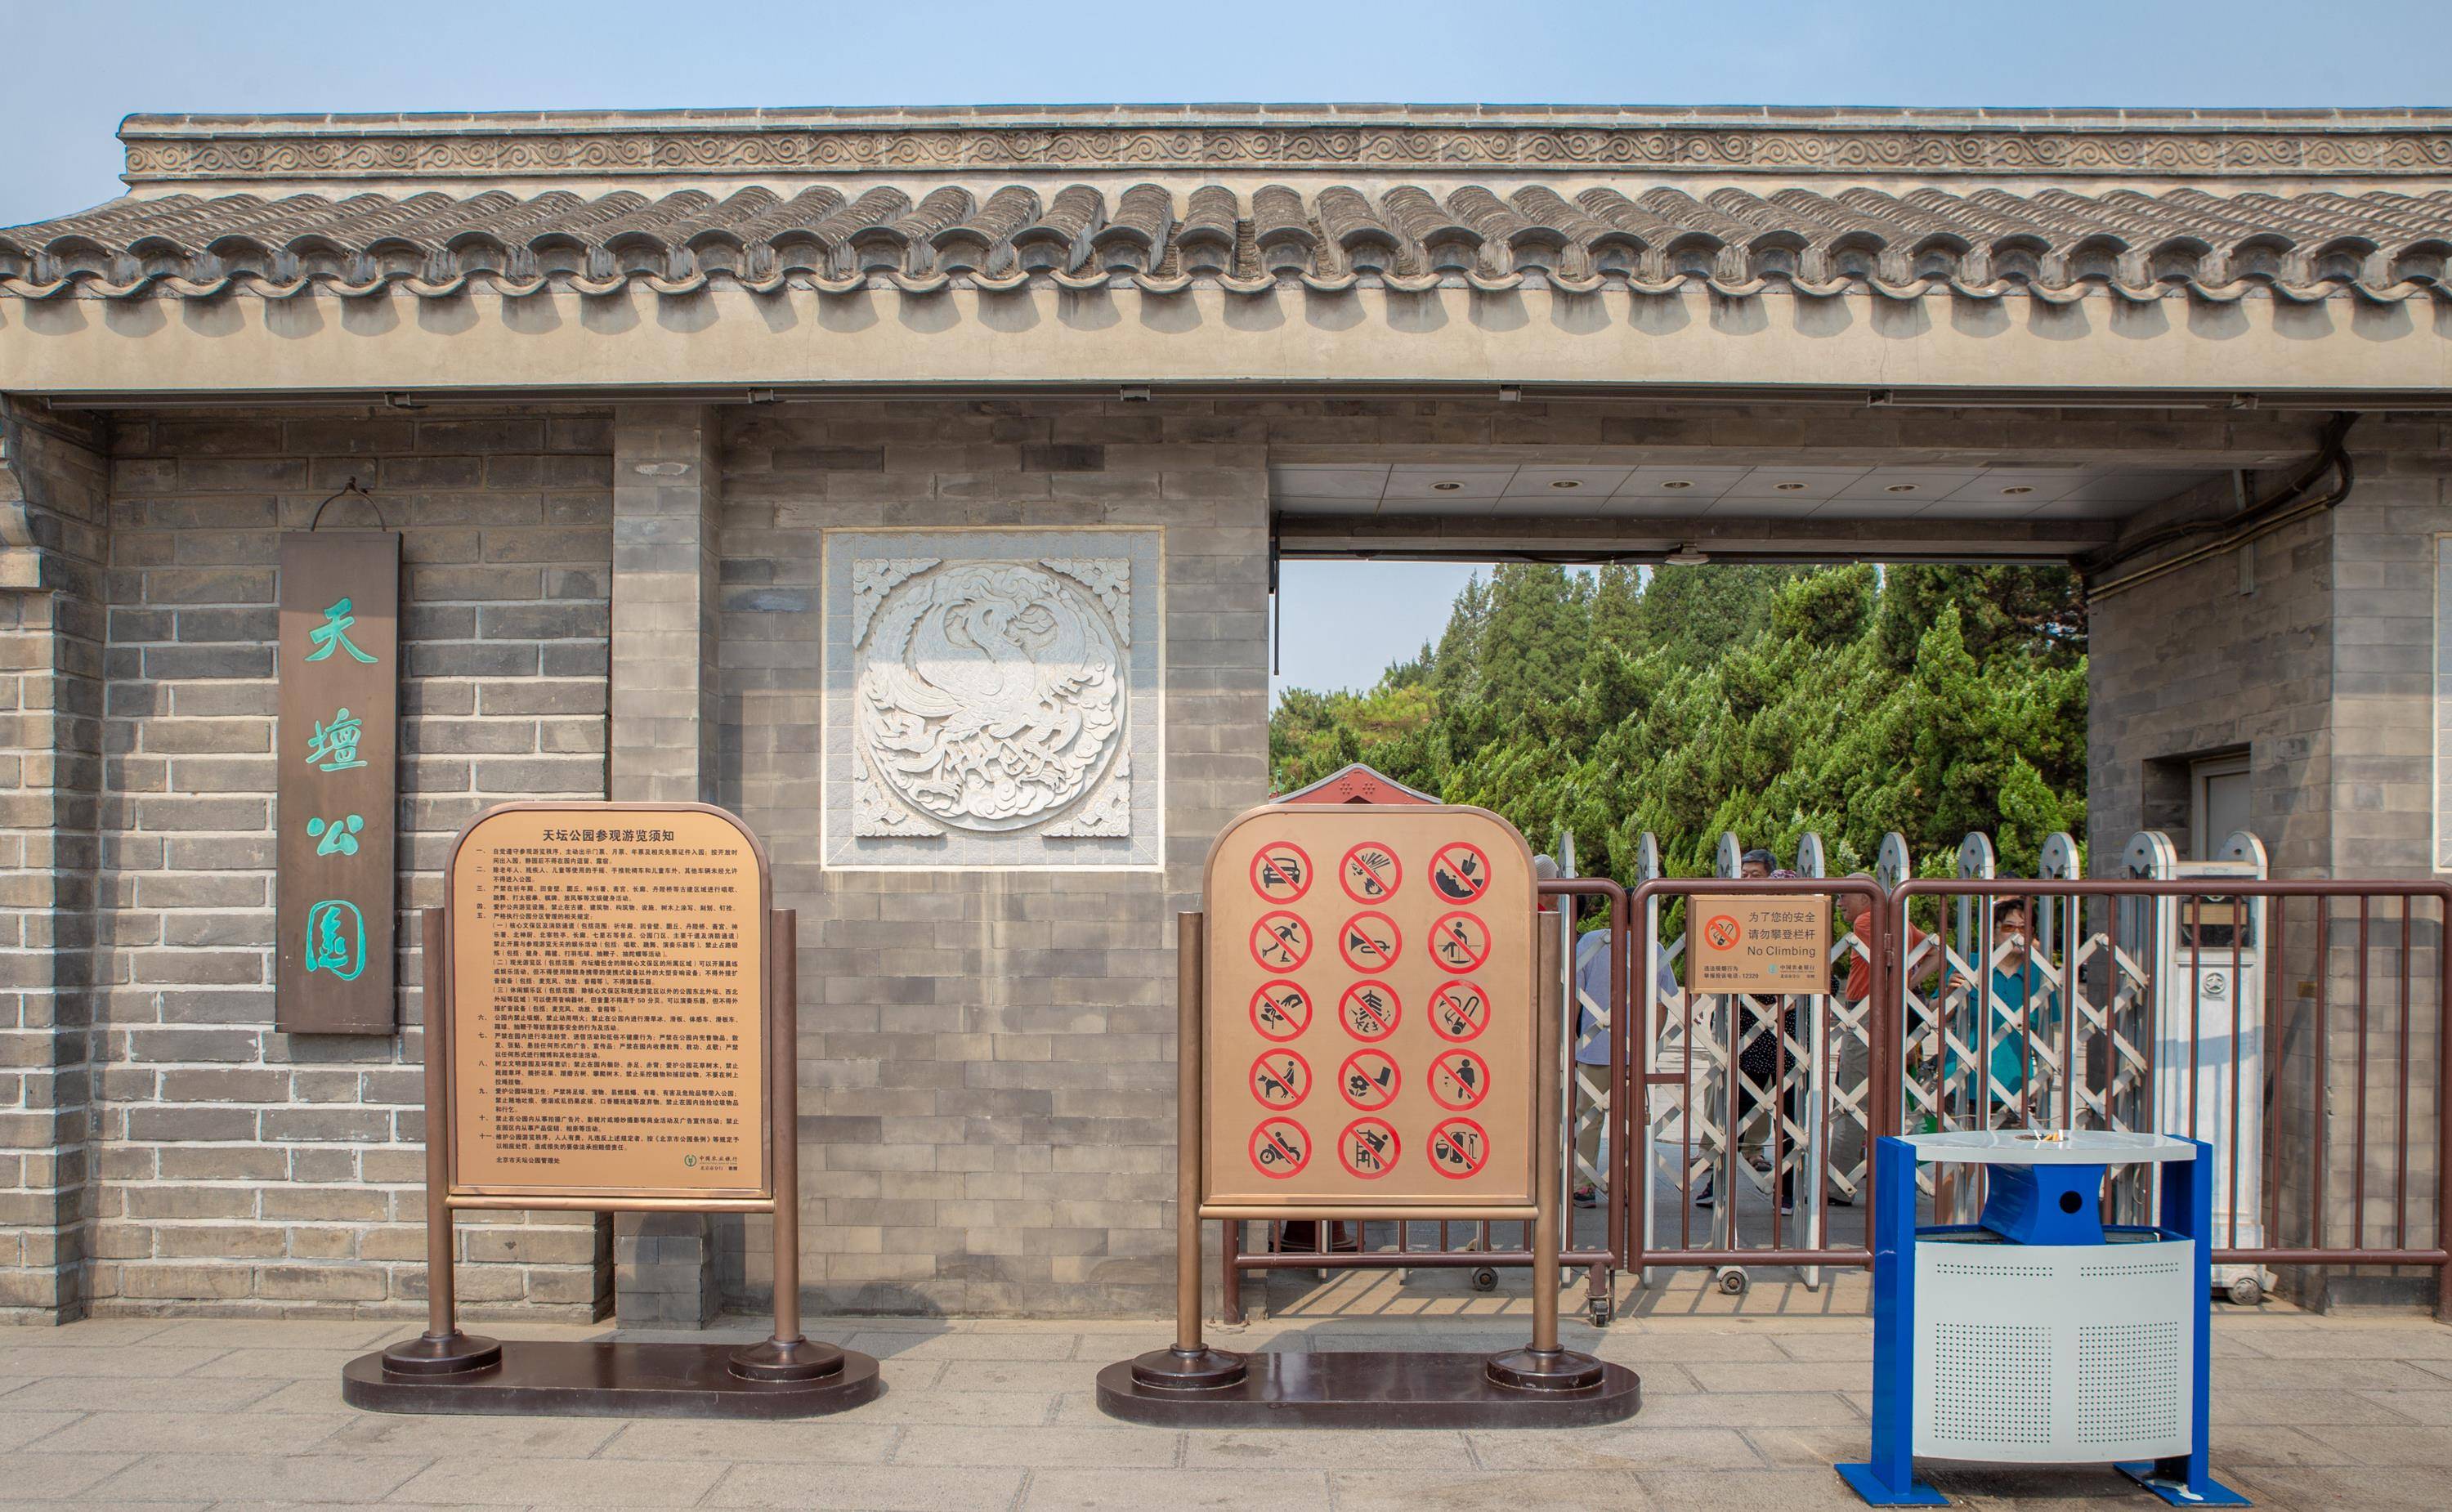 原创             北京保存最完好的古建筑，曾是天子祭拜的地方，距今600多年